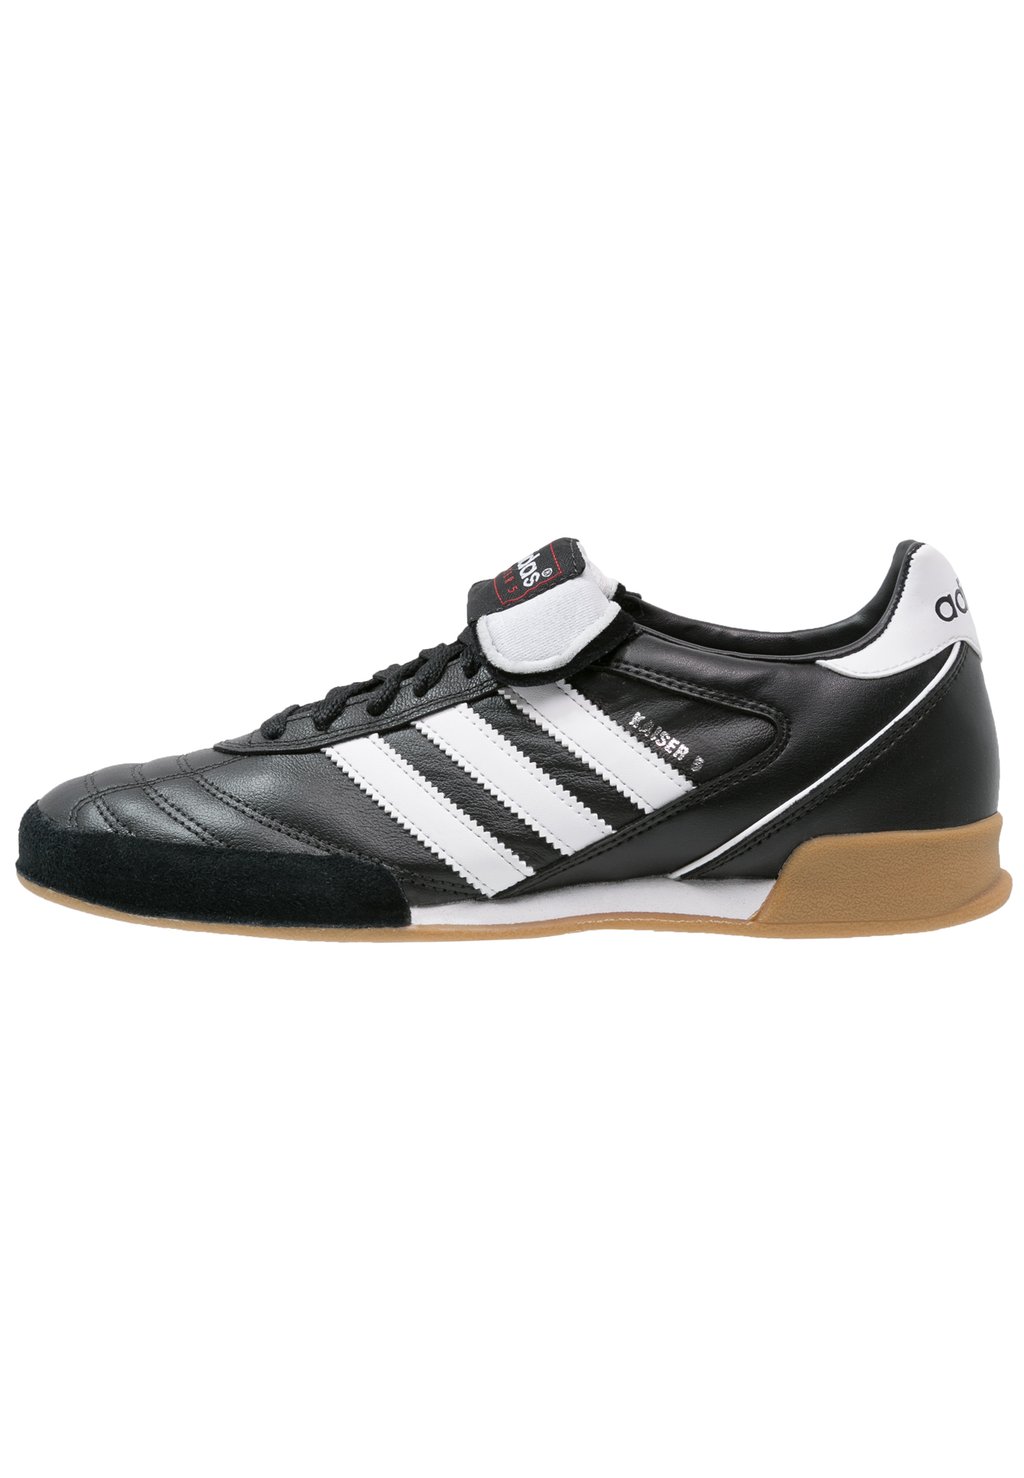 Кроссовки Adidas Kaiser 5 Goal, черный / белый для бега кроссовки torex running pina w 2fx black